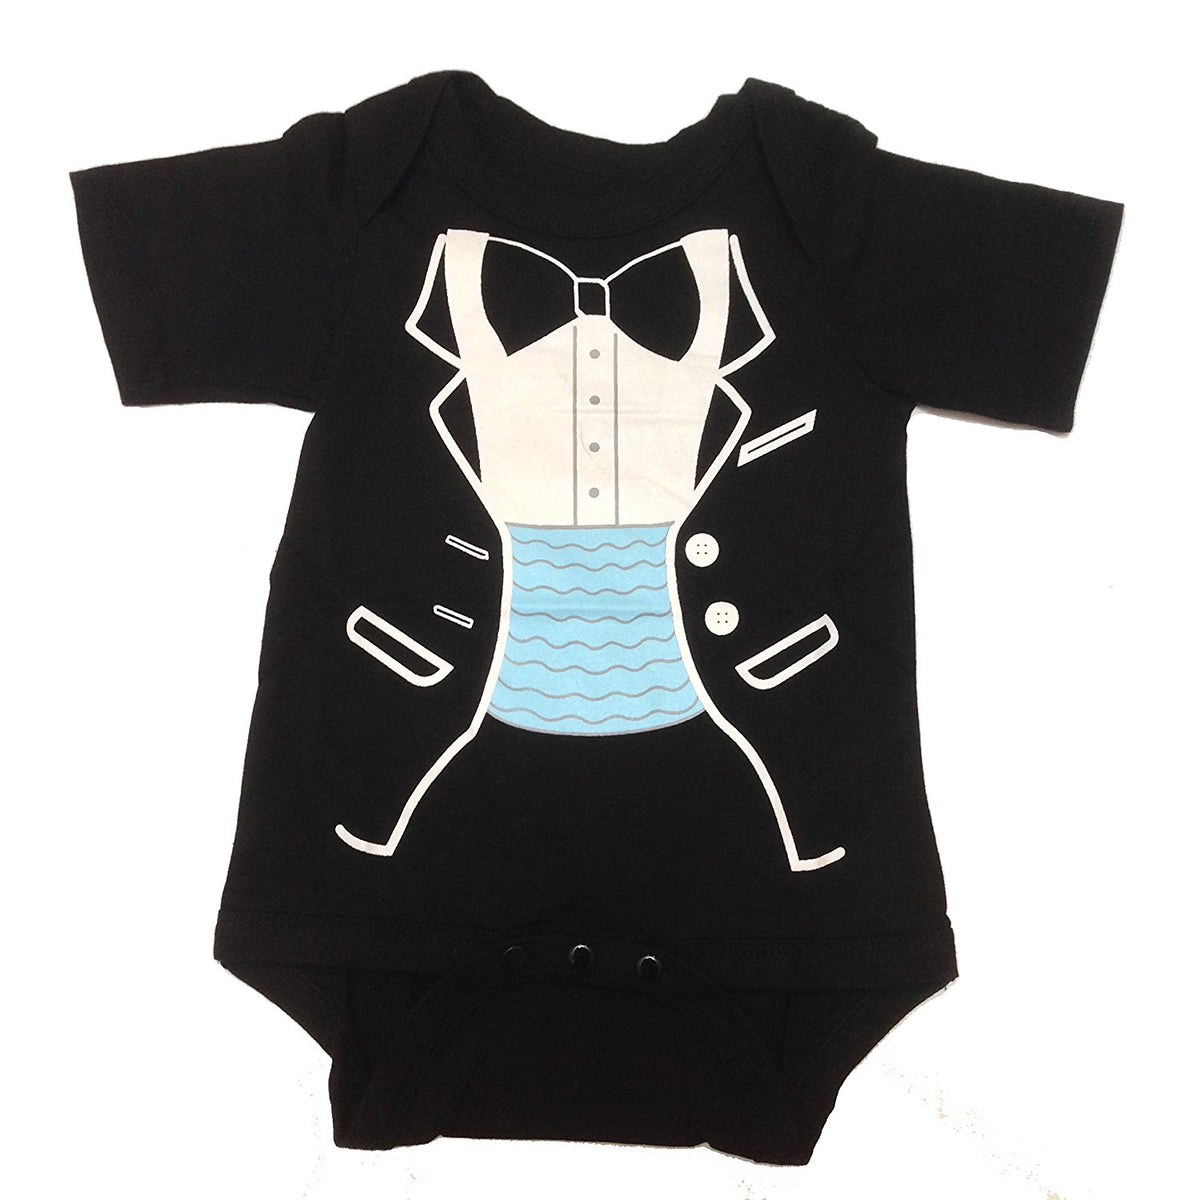 Kinder Toddler Baby Strampler Jungen Gentleman Romper Smoking Overall Kleidung 